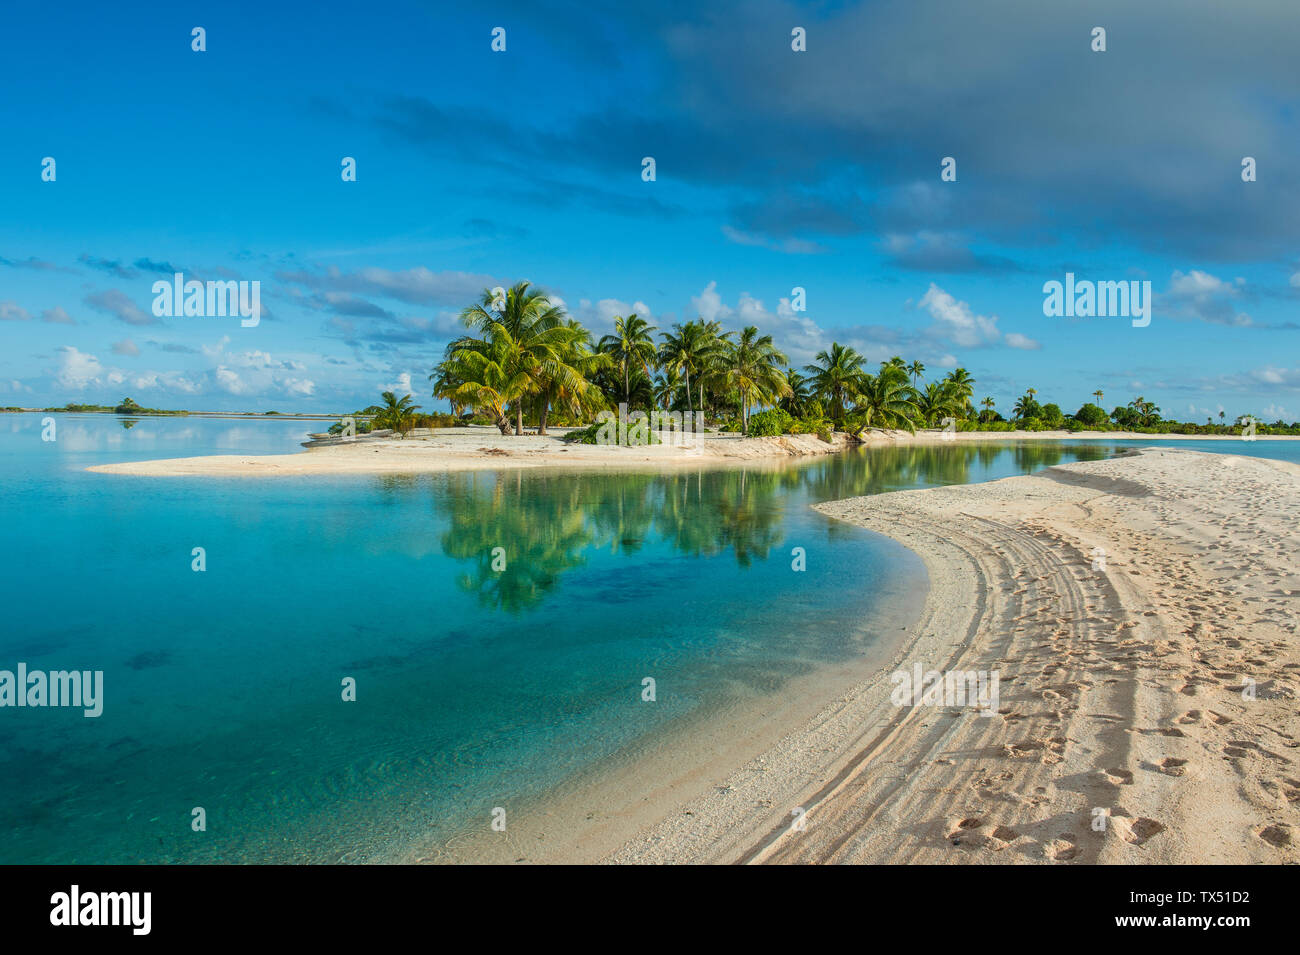 French Polynesia, Tuamotus, Tikehau, palm beach Stock Photo